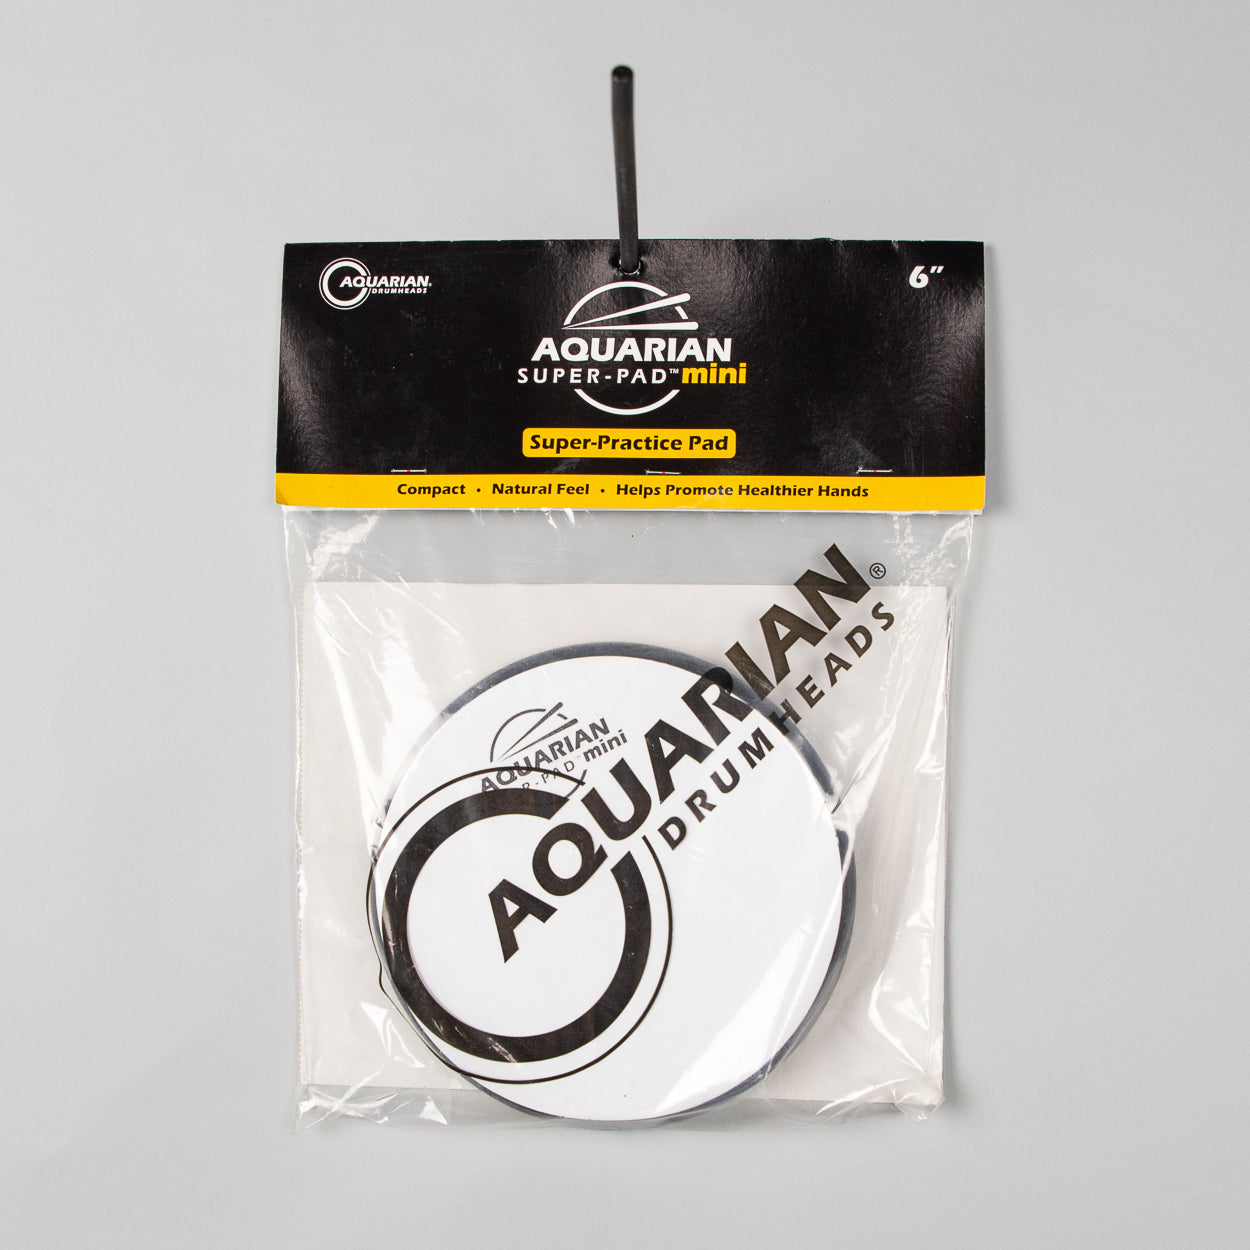 Aquarian SPP6 Super-Pad Mini 6" Practice Pad